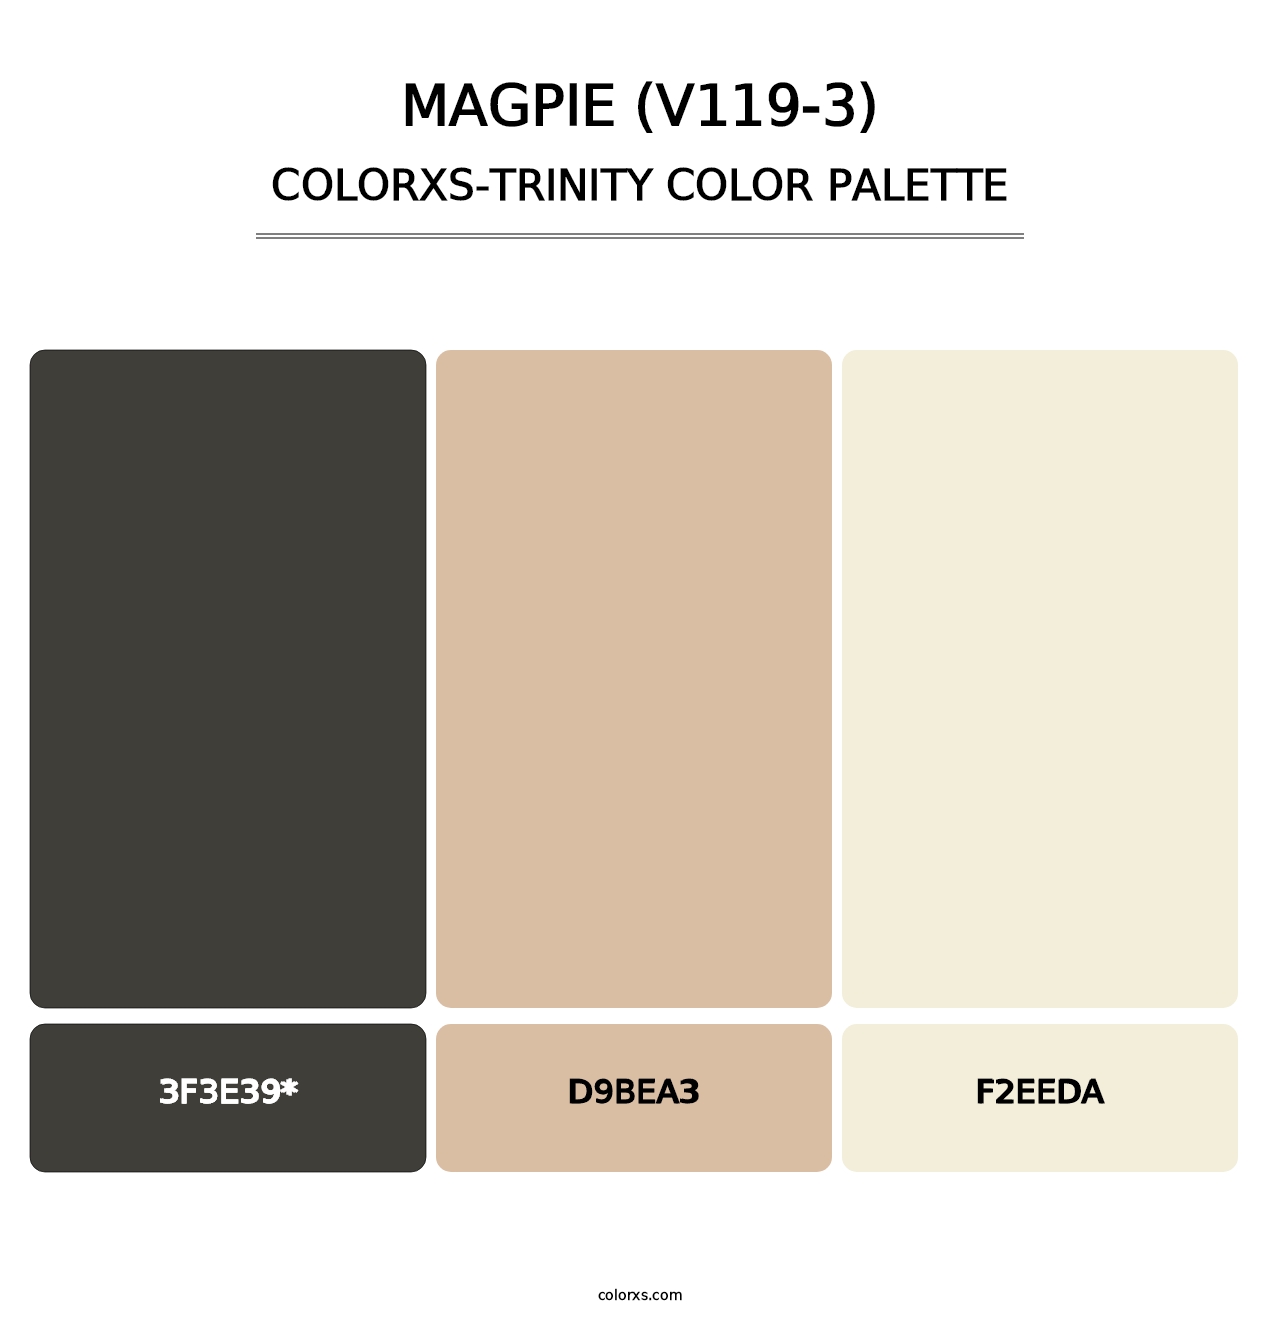 Magpie (V119-3) - Colorxs Trinity Palette